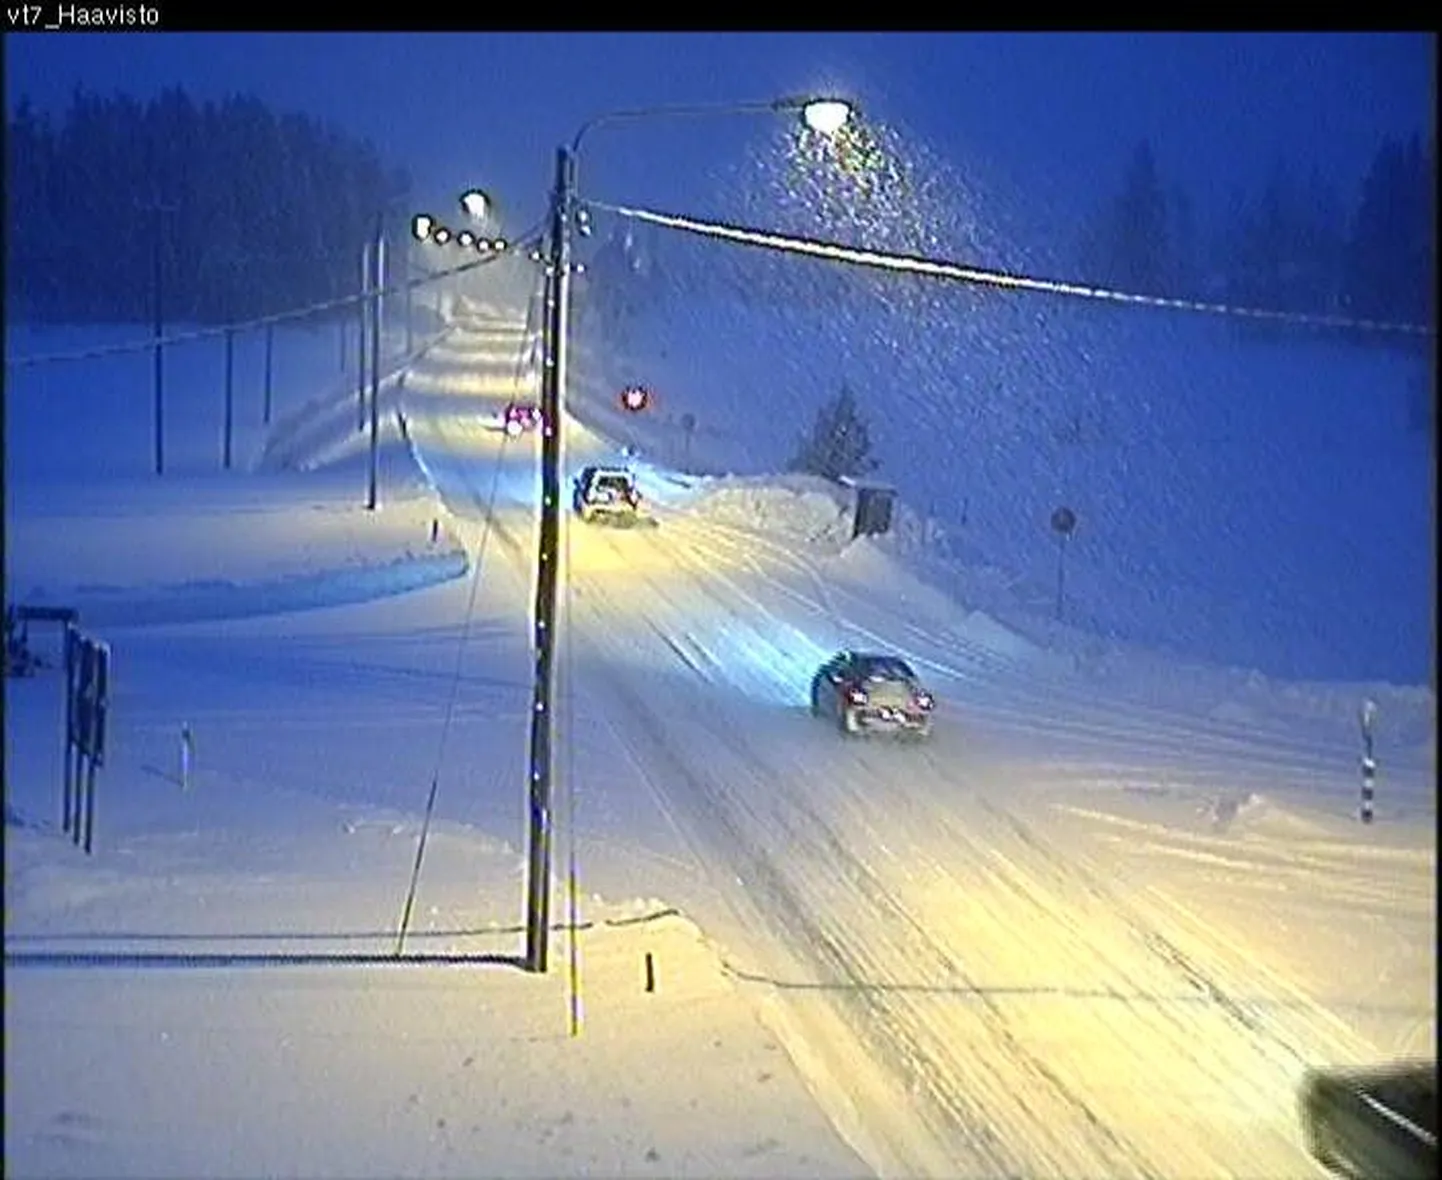 Lõuna-Soomes maantee nr 7 Pyhältö küla lähistel Hamina juures. Maanteekaamerast saadud pilt on tehtud kell 15.47.